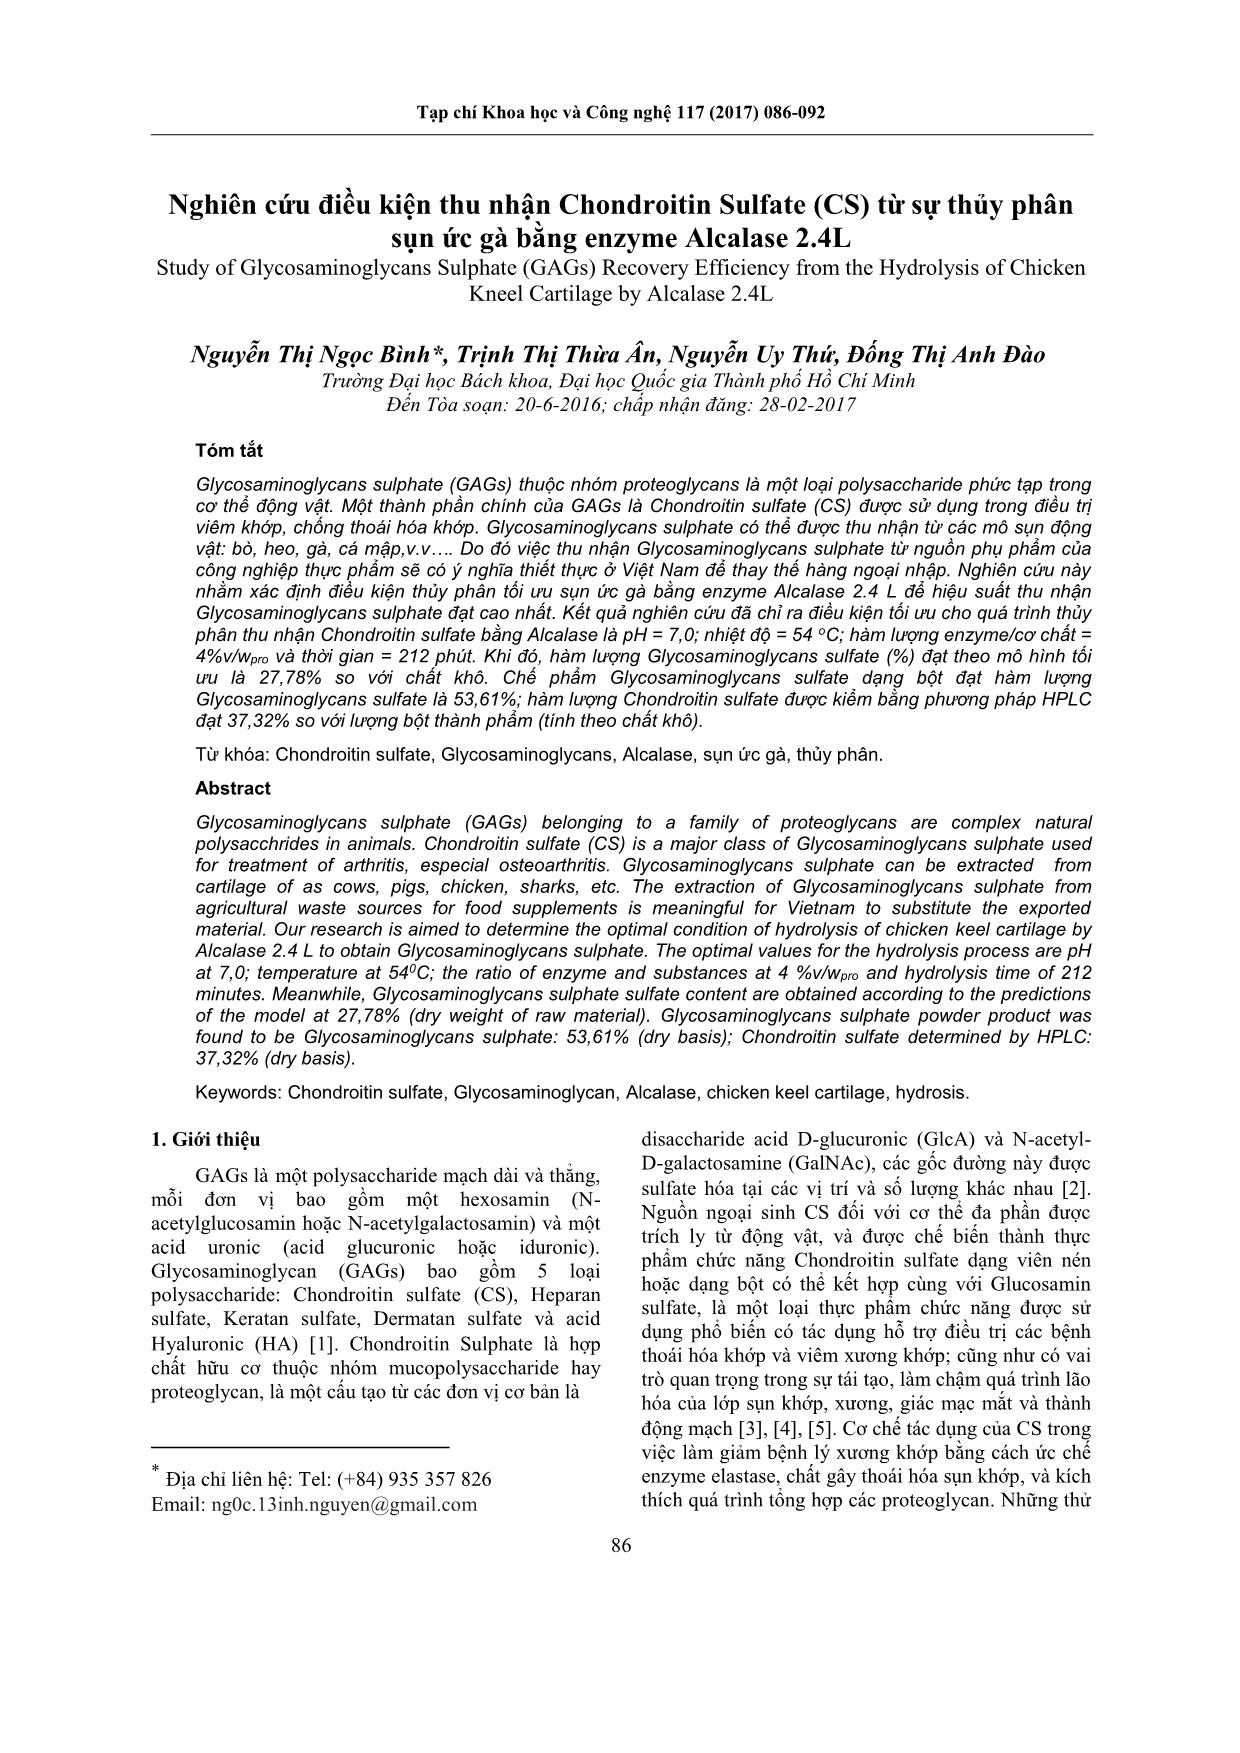 Nghiên cứu điều kiện thu nhận Chondroitin Sulfate (CS) từ sự thủy phân sụn ức gà bằng enzyme Alcalase 2.4L trang 1